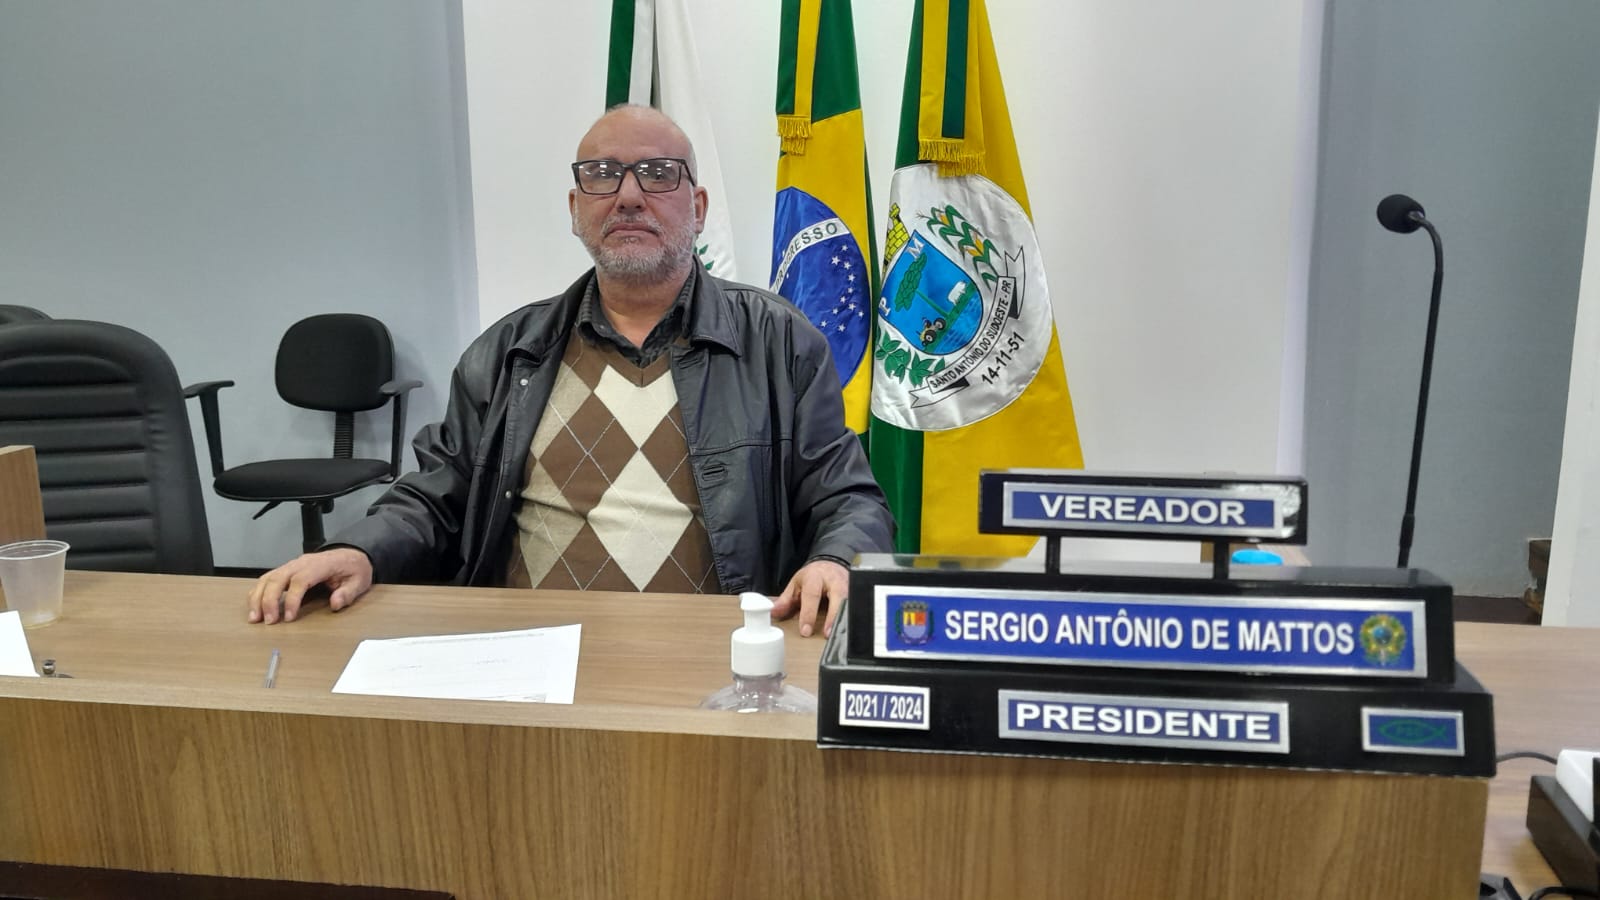 Vereador Sérgio Mattos avalia primeiro semestre frente a presidência do legislativo santo-antoniense